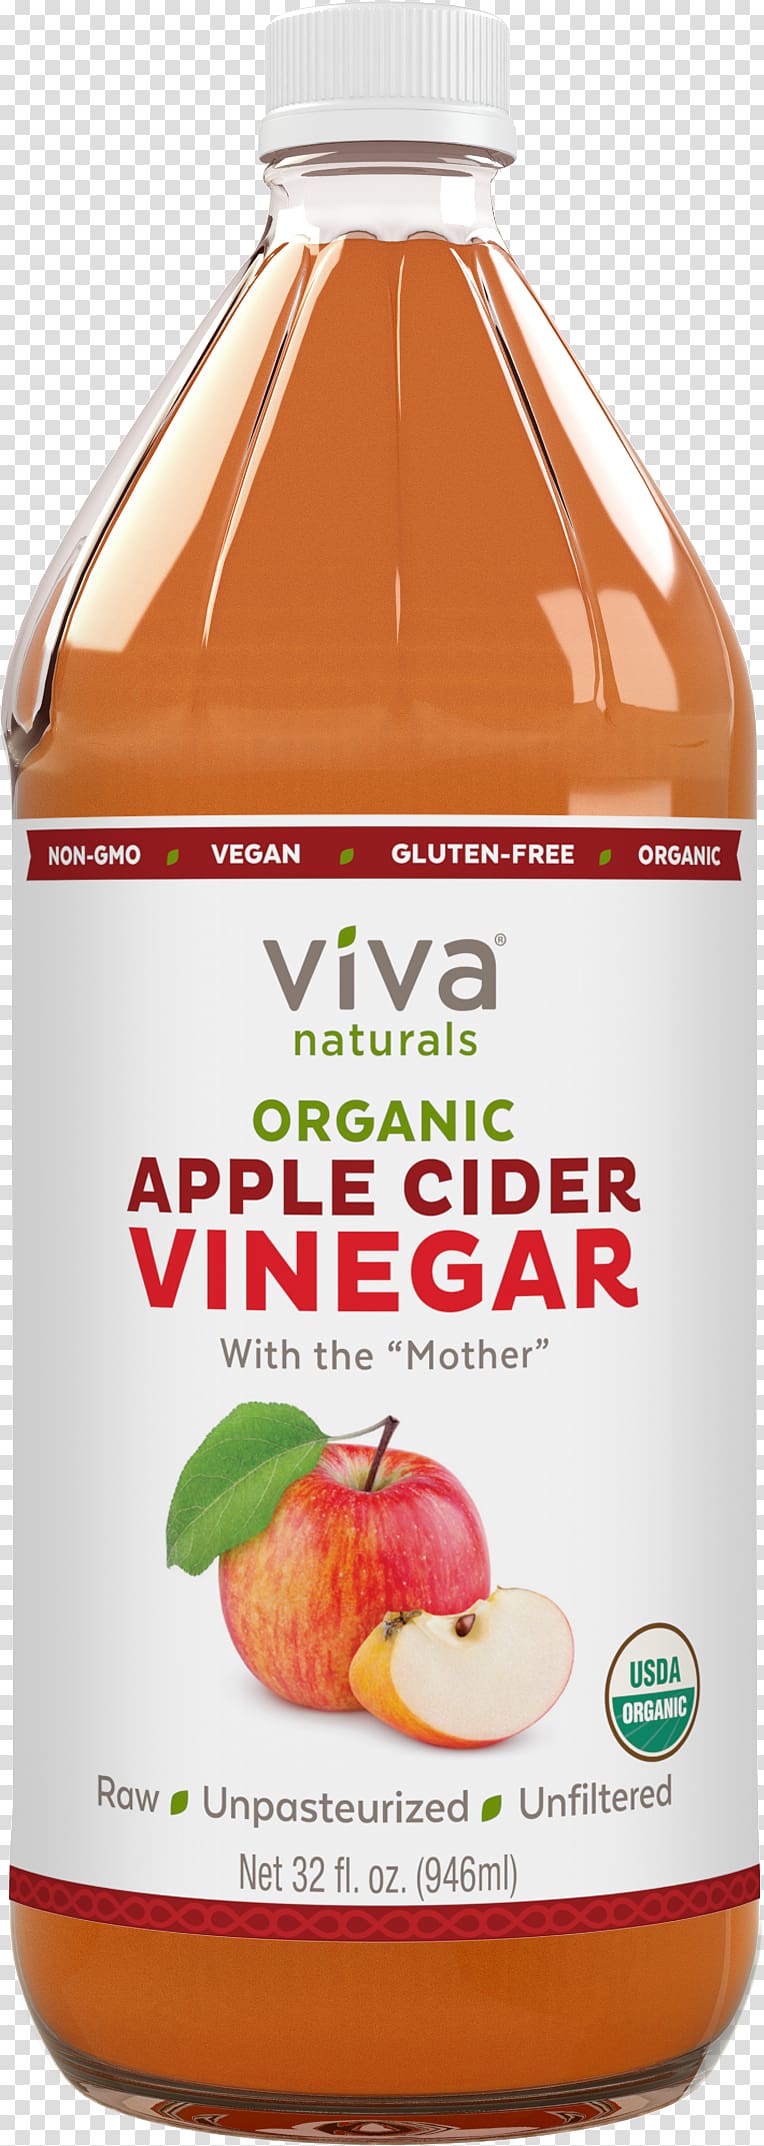 Apple cider vinegar Food, apple transparent background PNG clipart